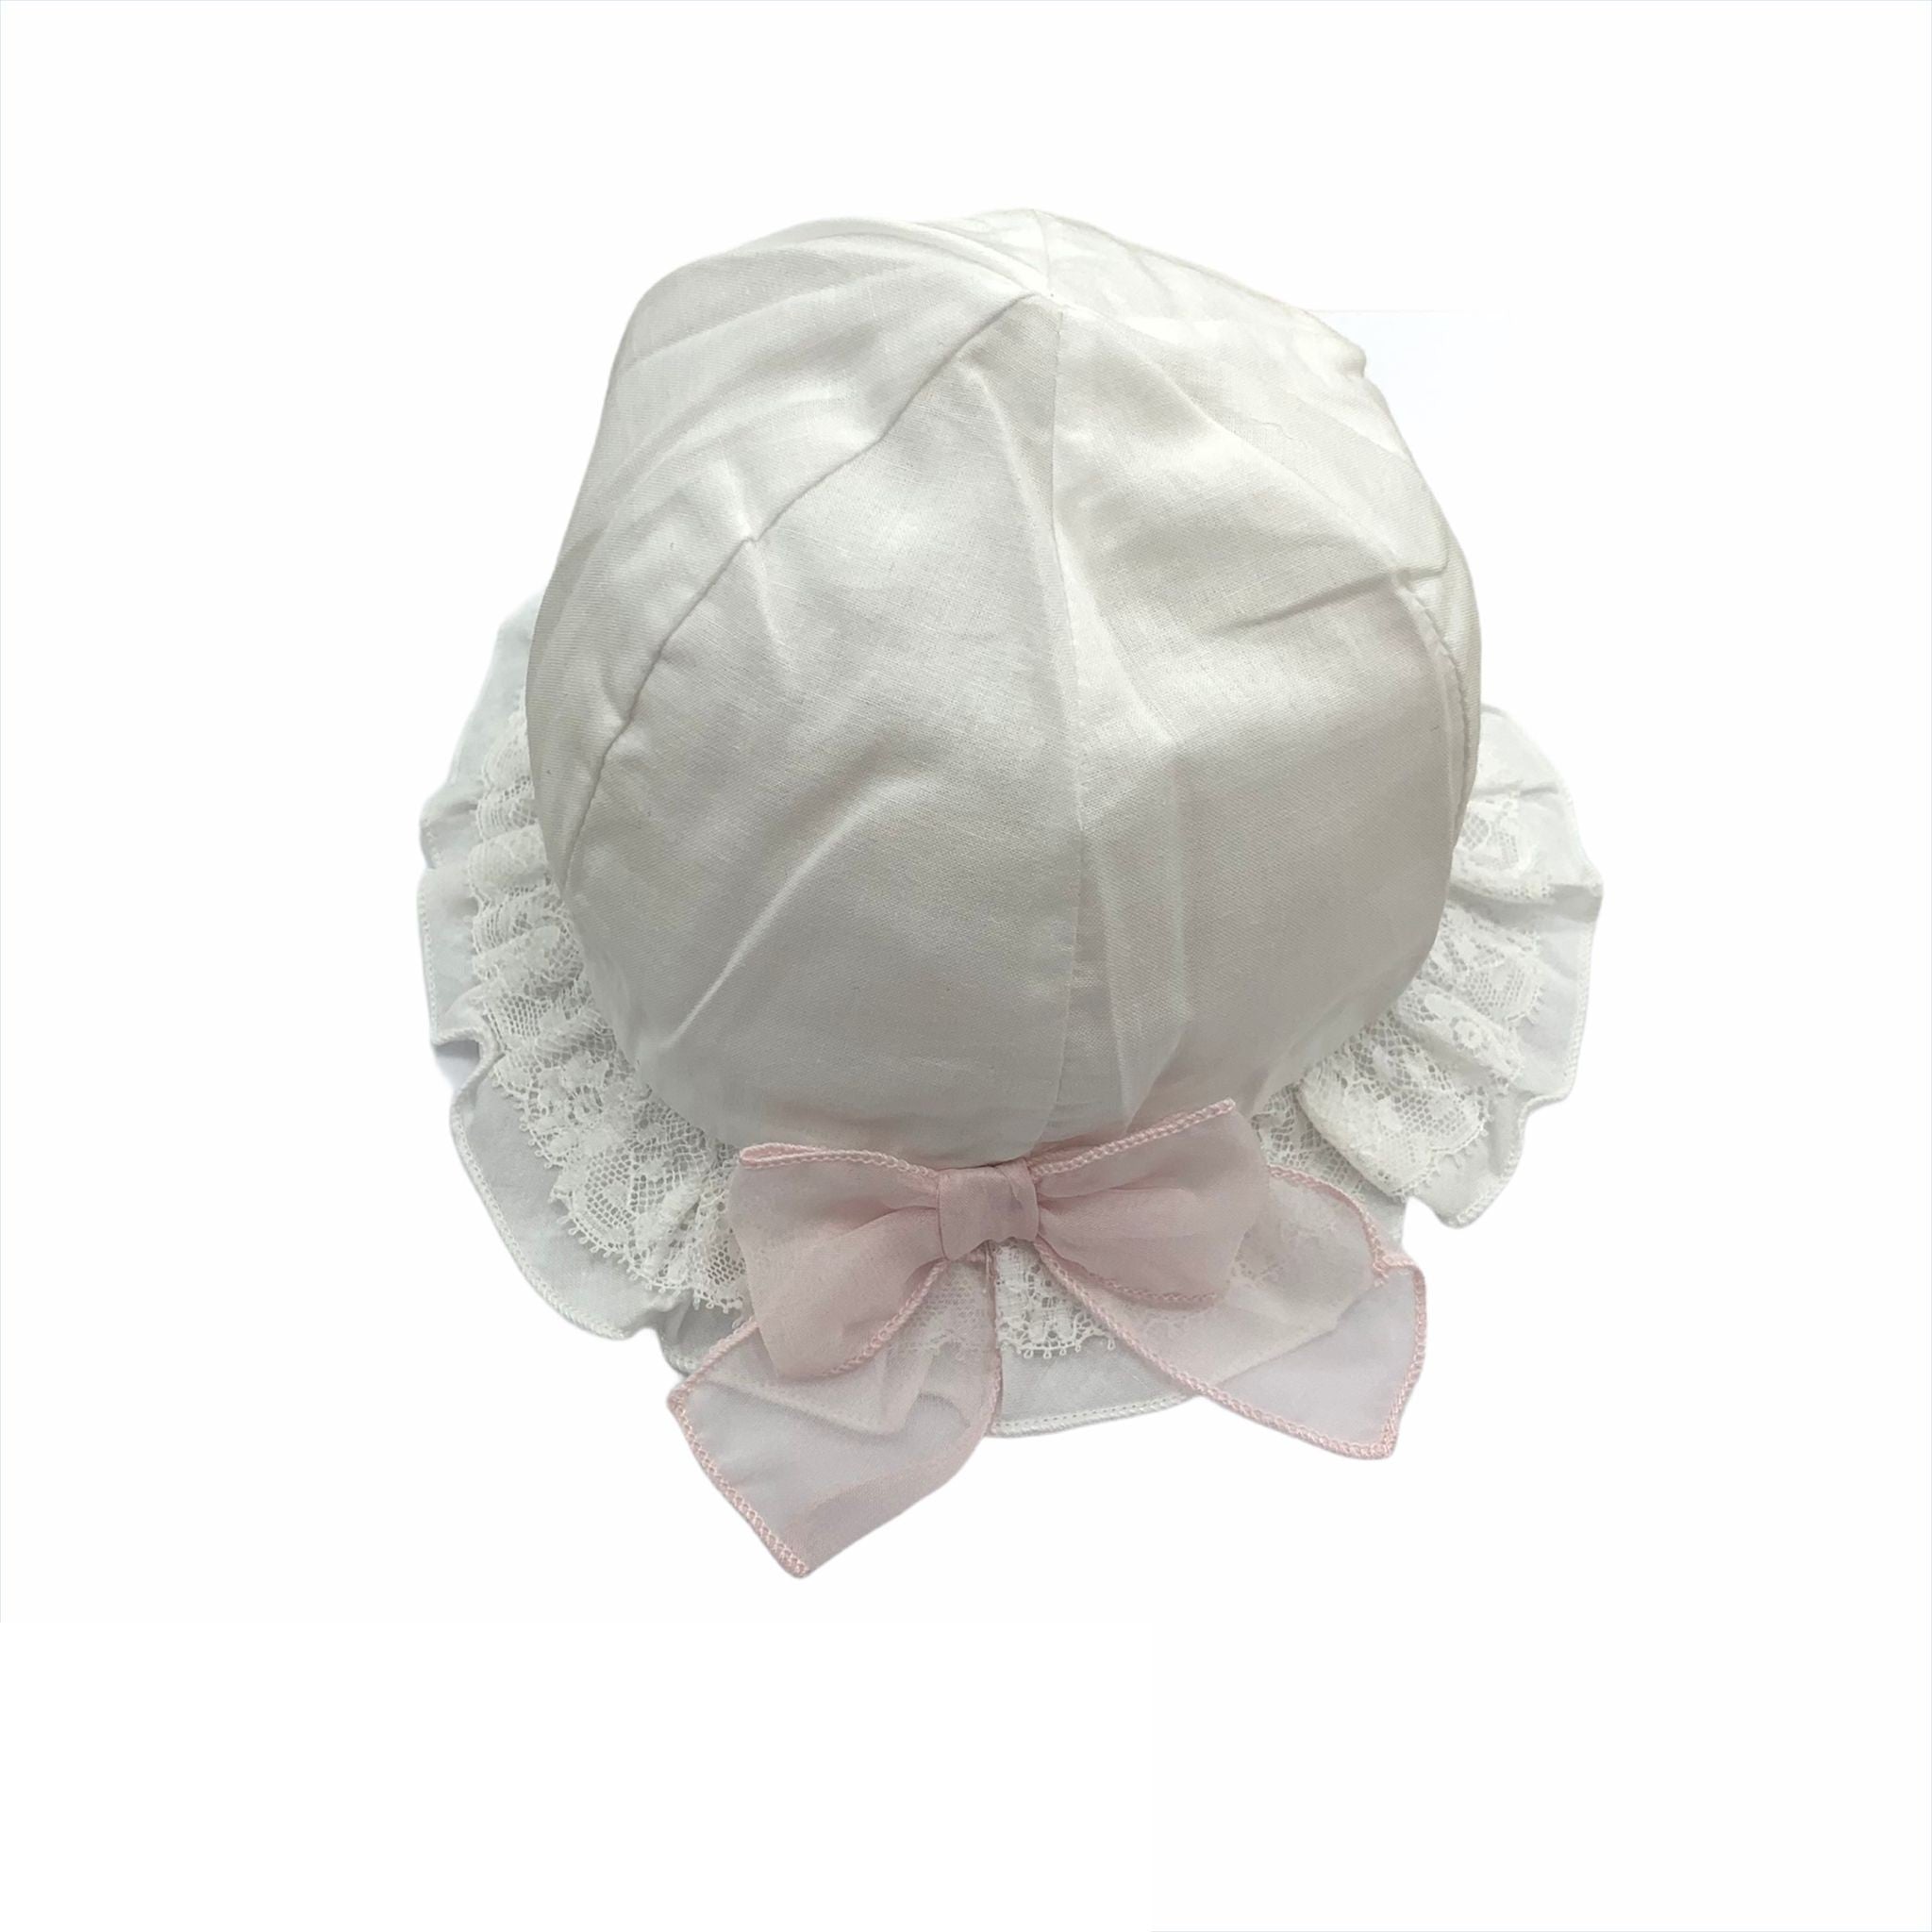 Cappello Modello Pescatore In Cotone Bianco Con Pizzo E Fiocco Rosa Neonata NNINNAOH E1553 - NINNAOH - LuxuryKids